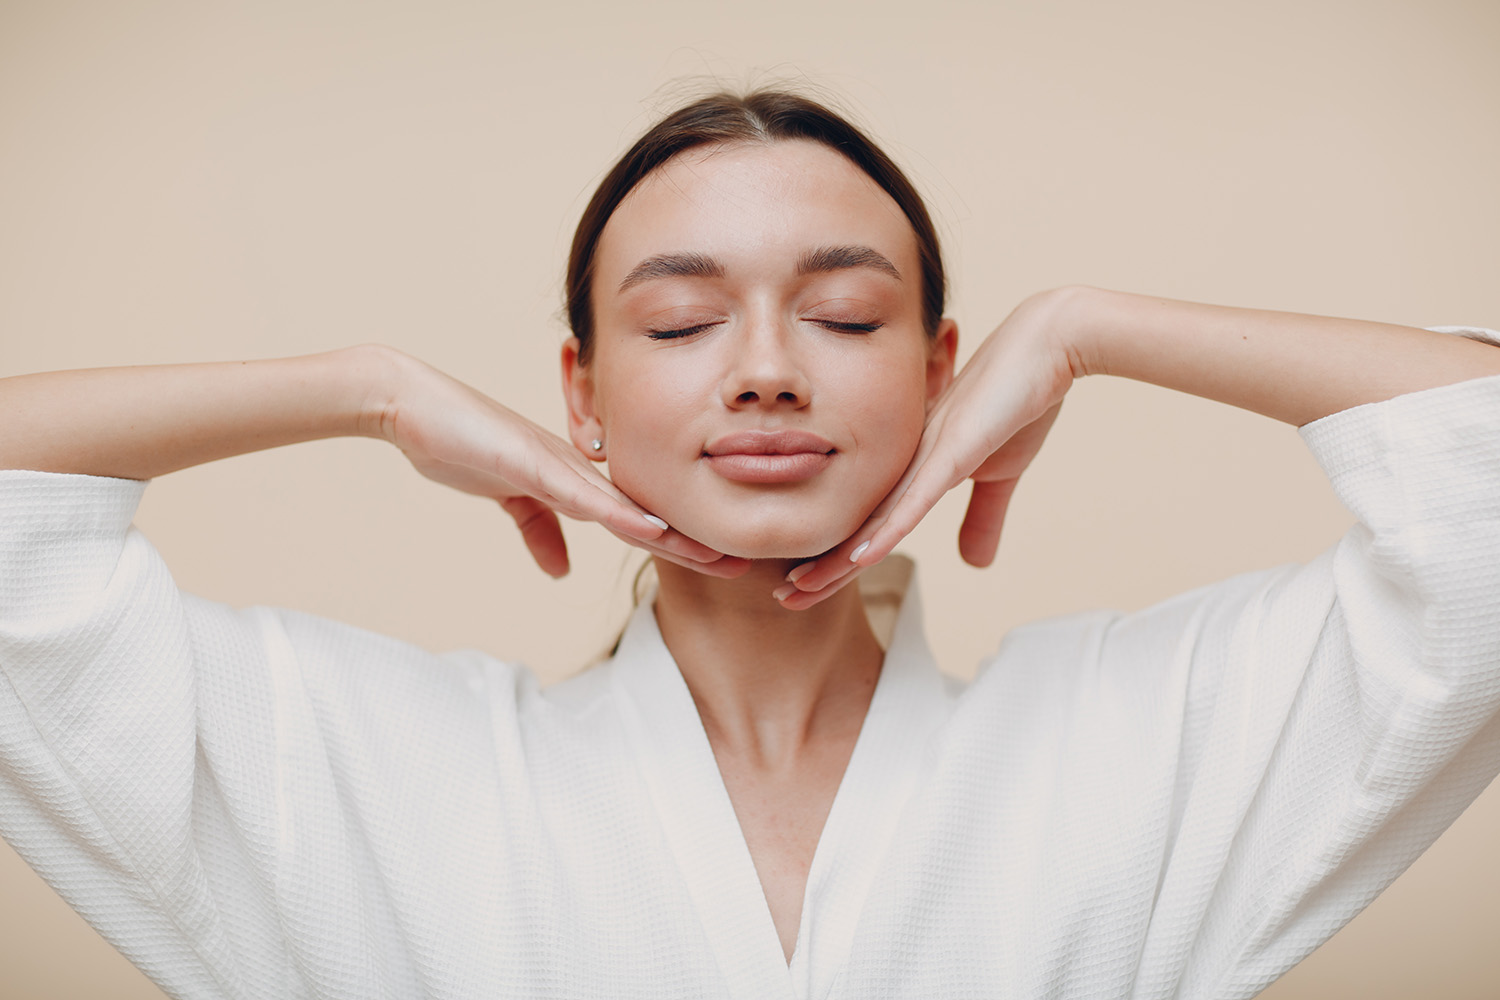 Young woman doing face building yoga facial gymnastics self massage